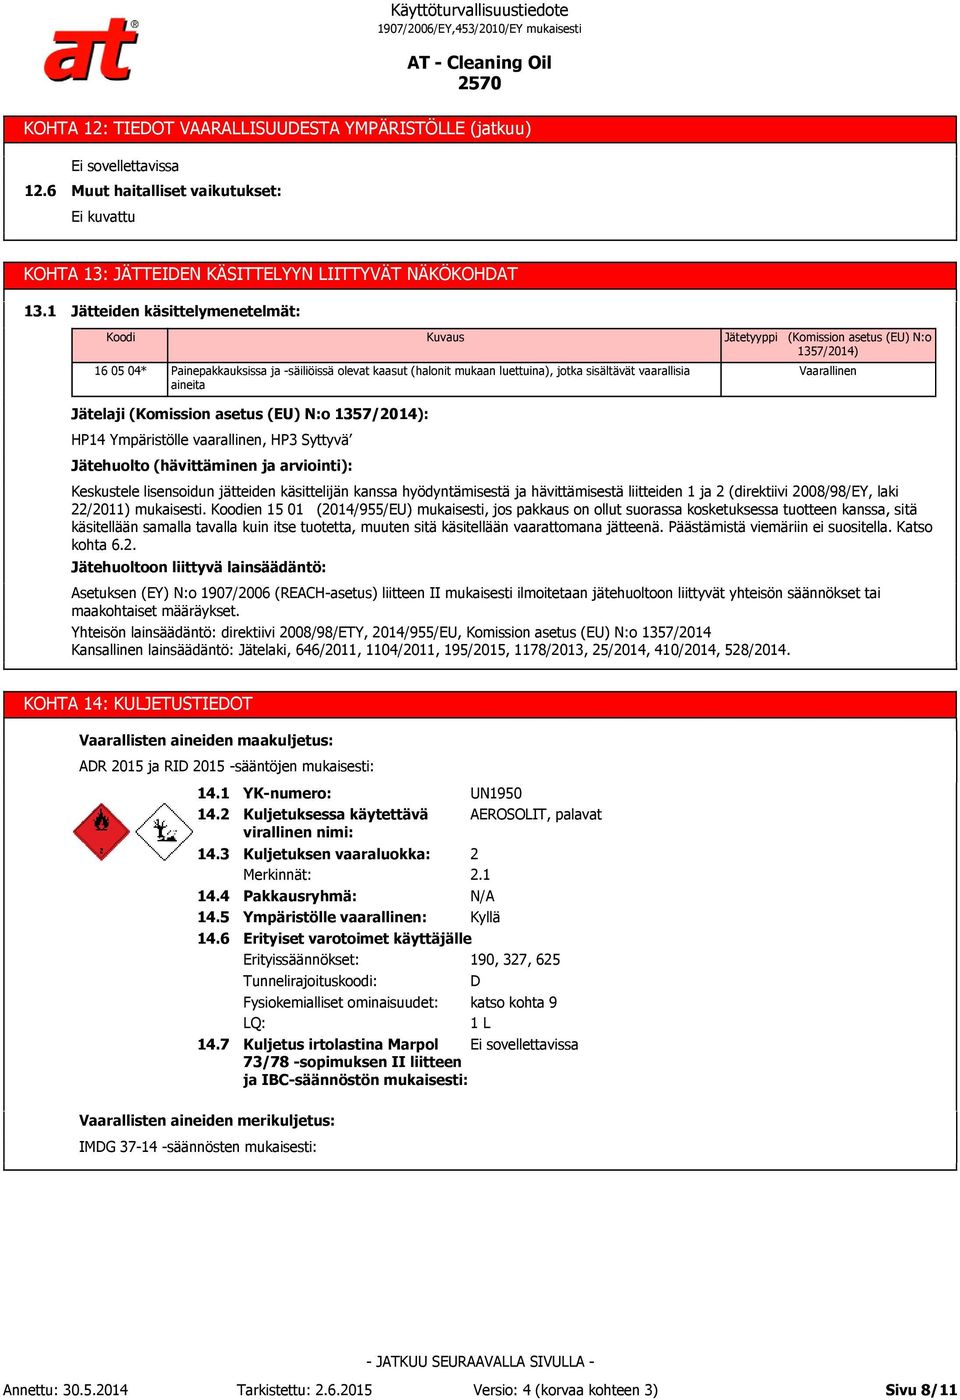 (EU) N:o 1357/2014) Vaarallinen Jätelaji (Komission asetus (EU) N:o 1357/2014): HP14 Ympäristölle vaarallinen, HP3 Syttyvä Jätehuolto (hävittäminen ja arviointi): Keskustele lisensoidun jätteiden